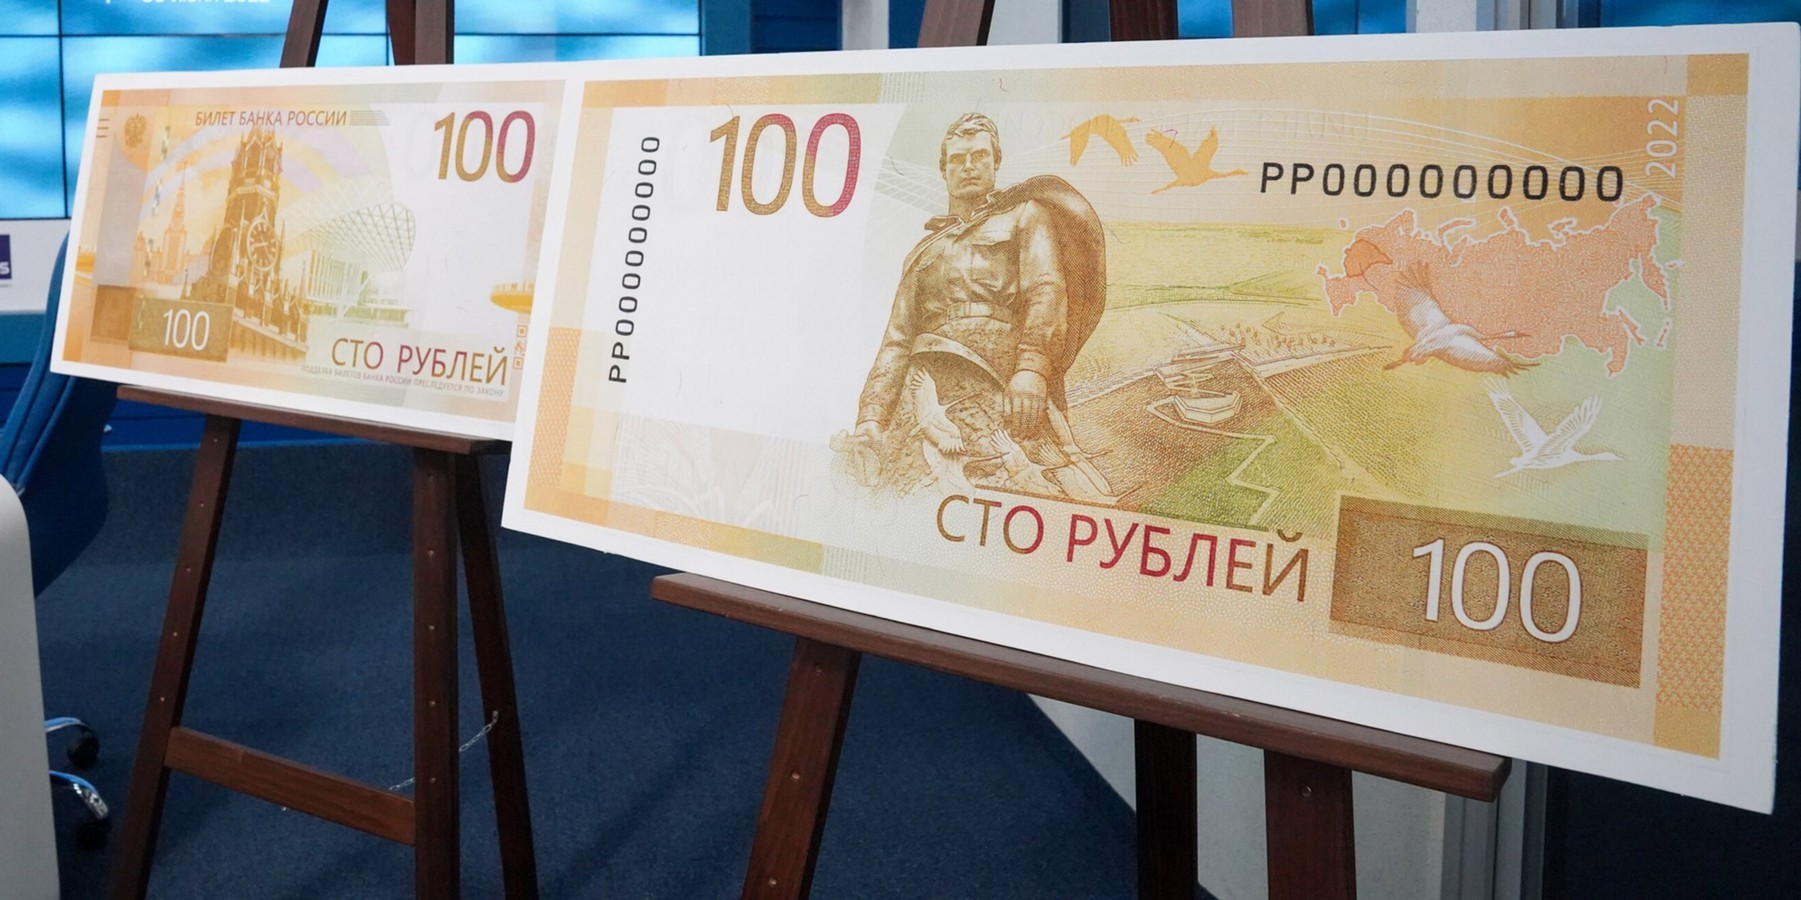 Новая 100 рублевая купюра россии